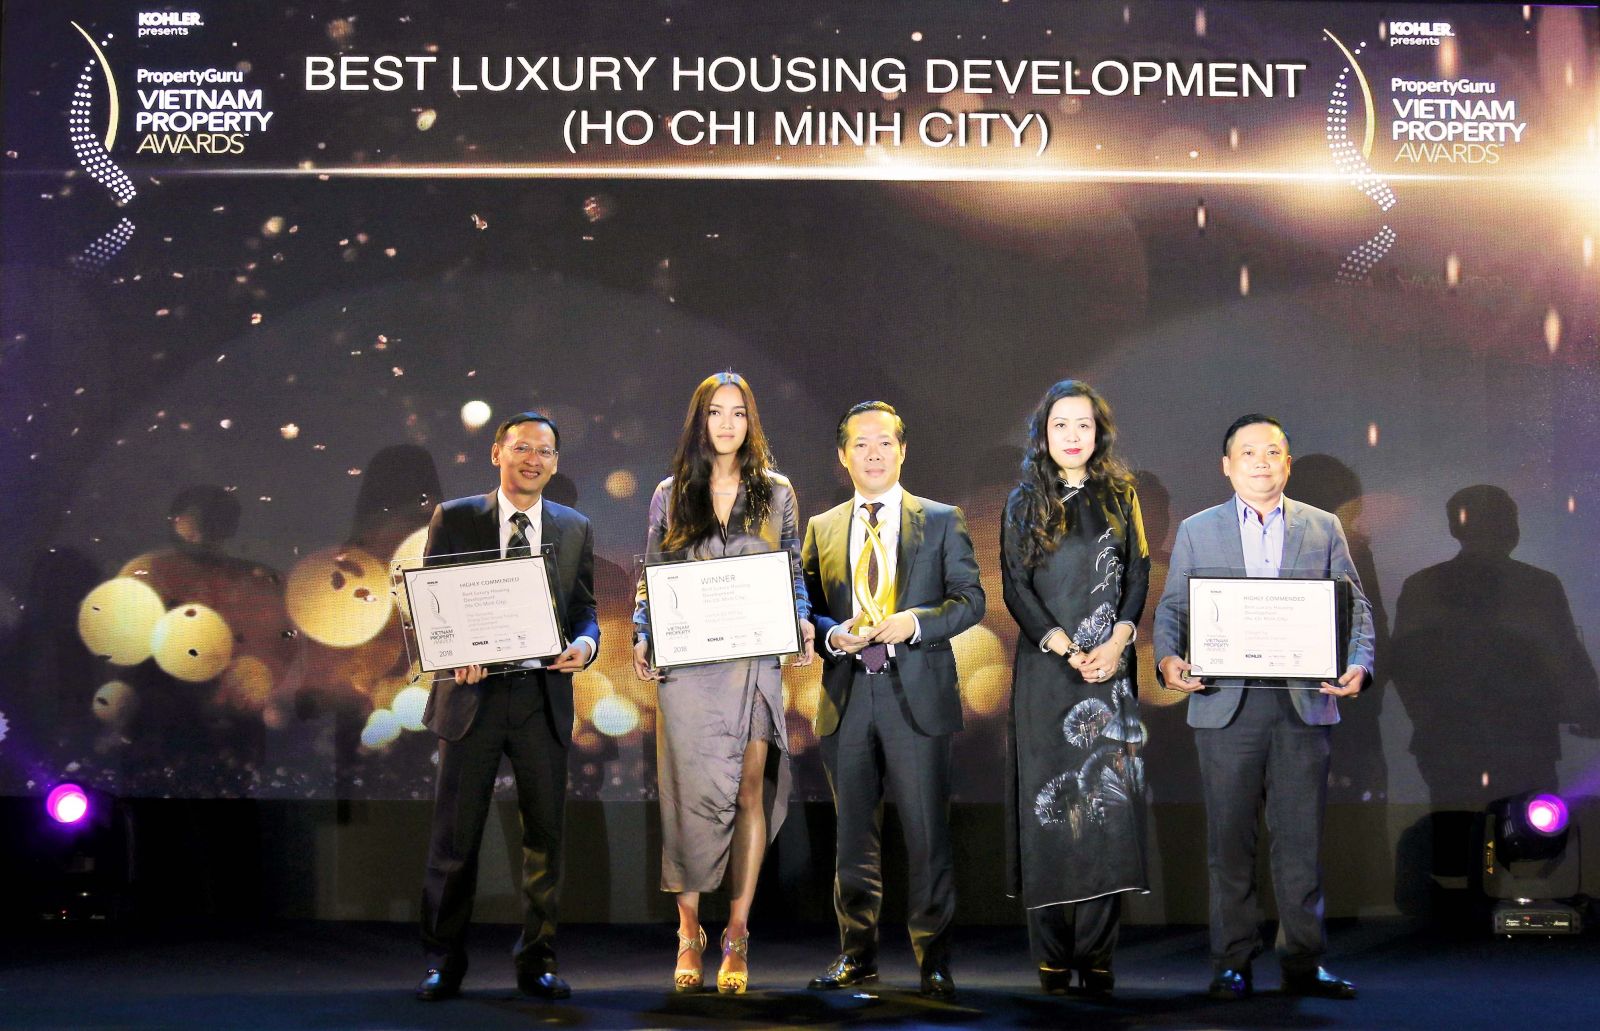 Đại diện các công ty nhận giải thưởng: Khang Điền – Kiến Á - Capitaland